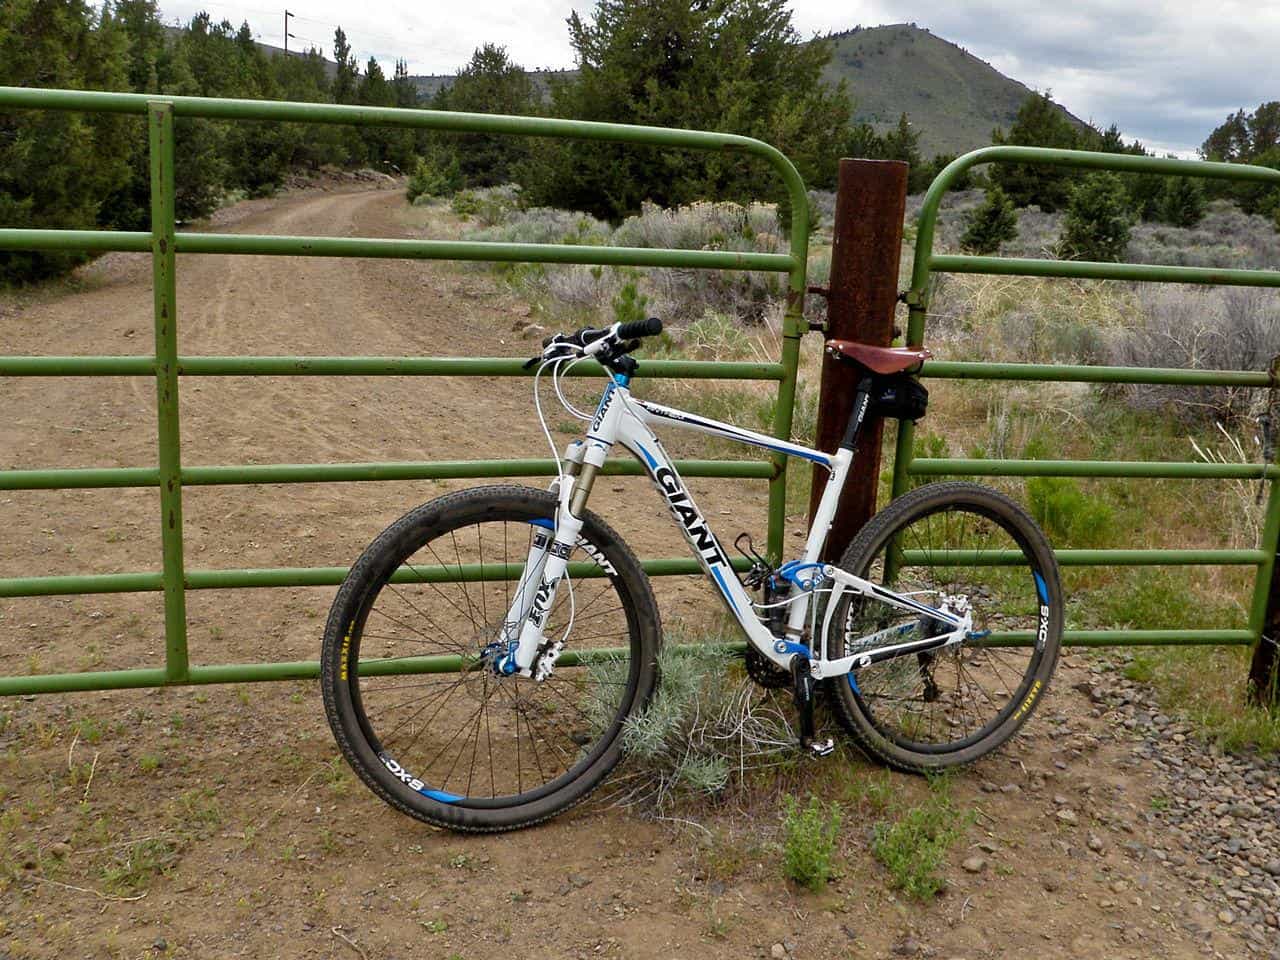 How Good Are Giant Mountain Bikes?